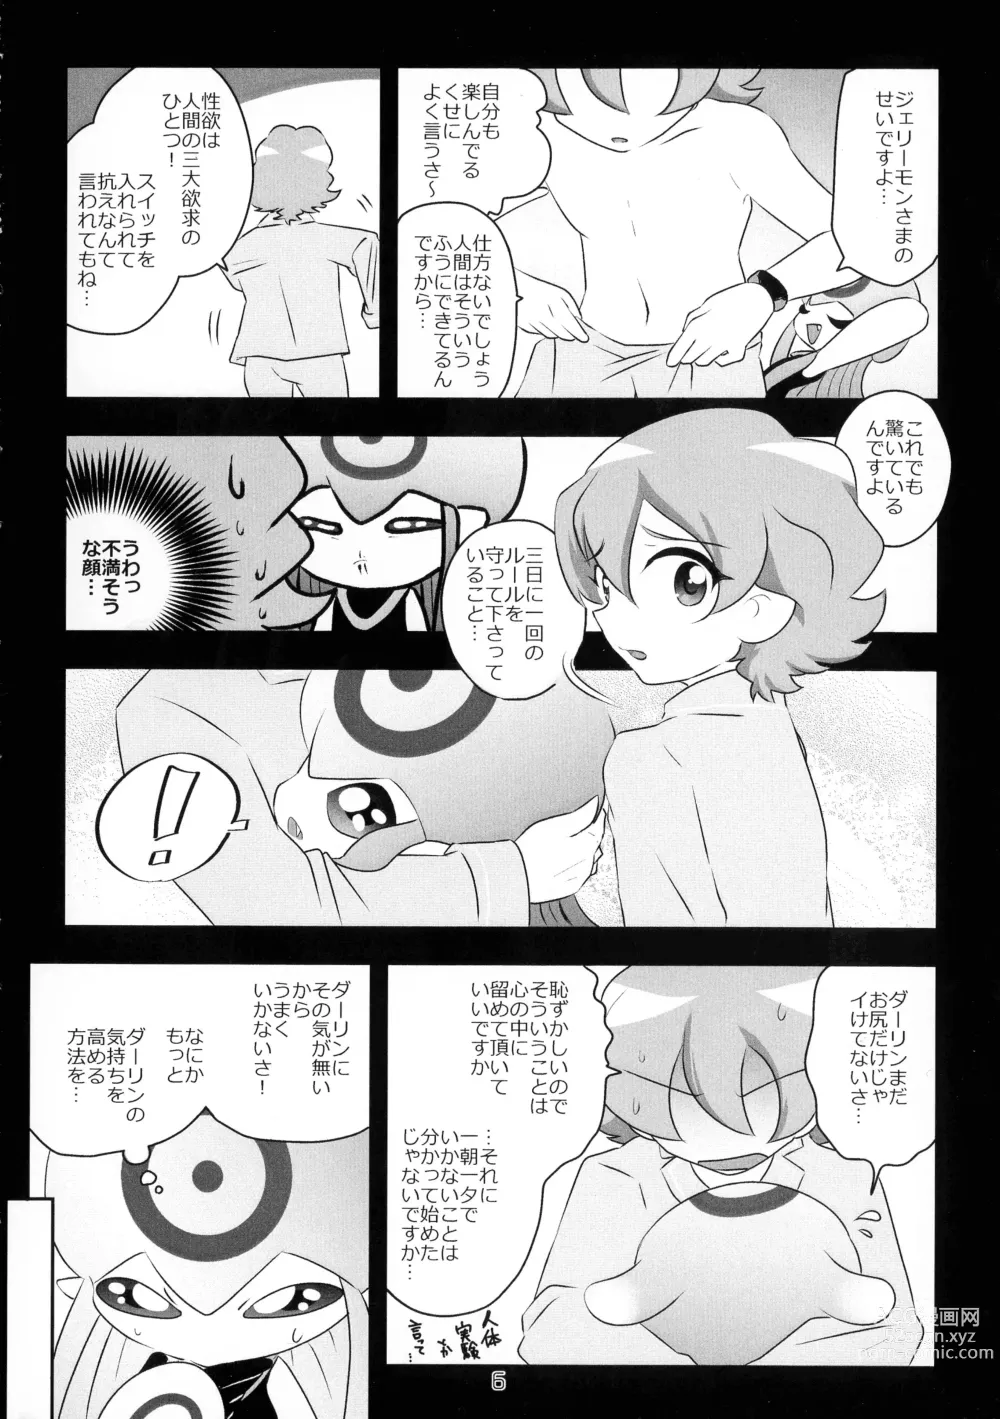 Page 7 of doujinshi Chusei kokoro ikusei gairon 3